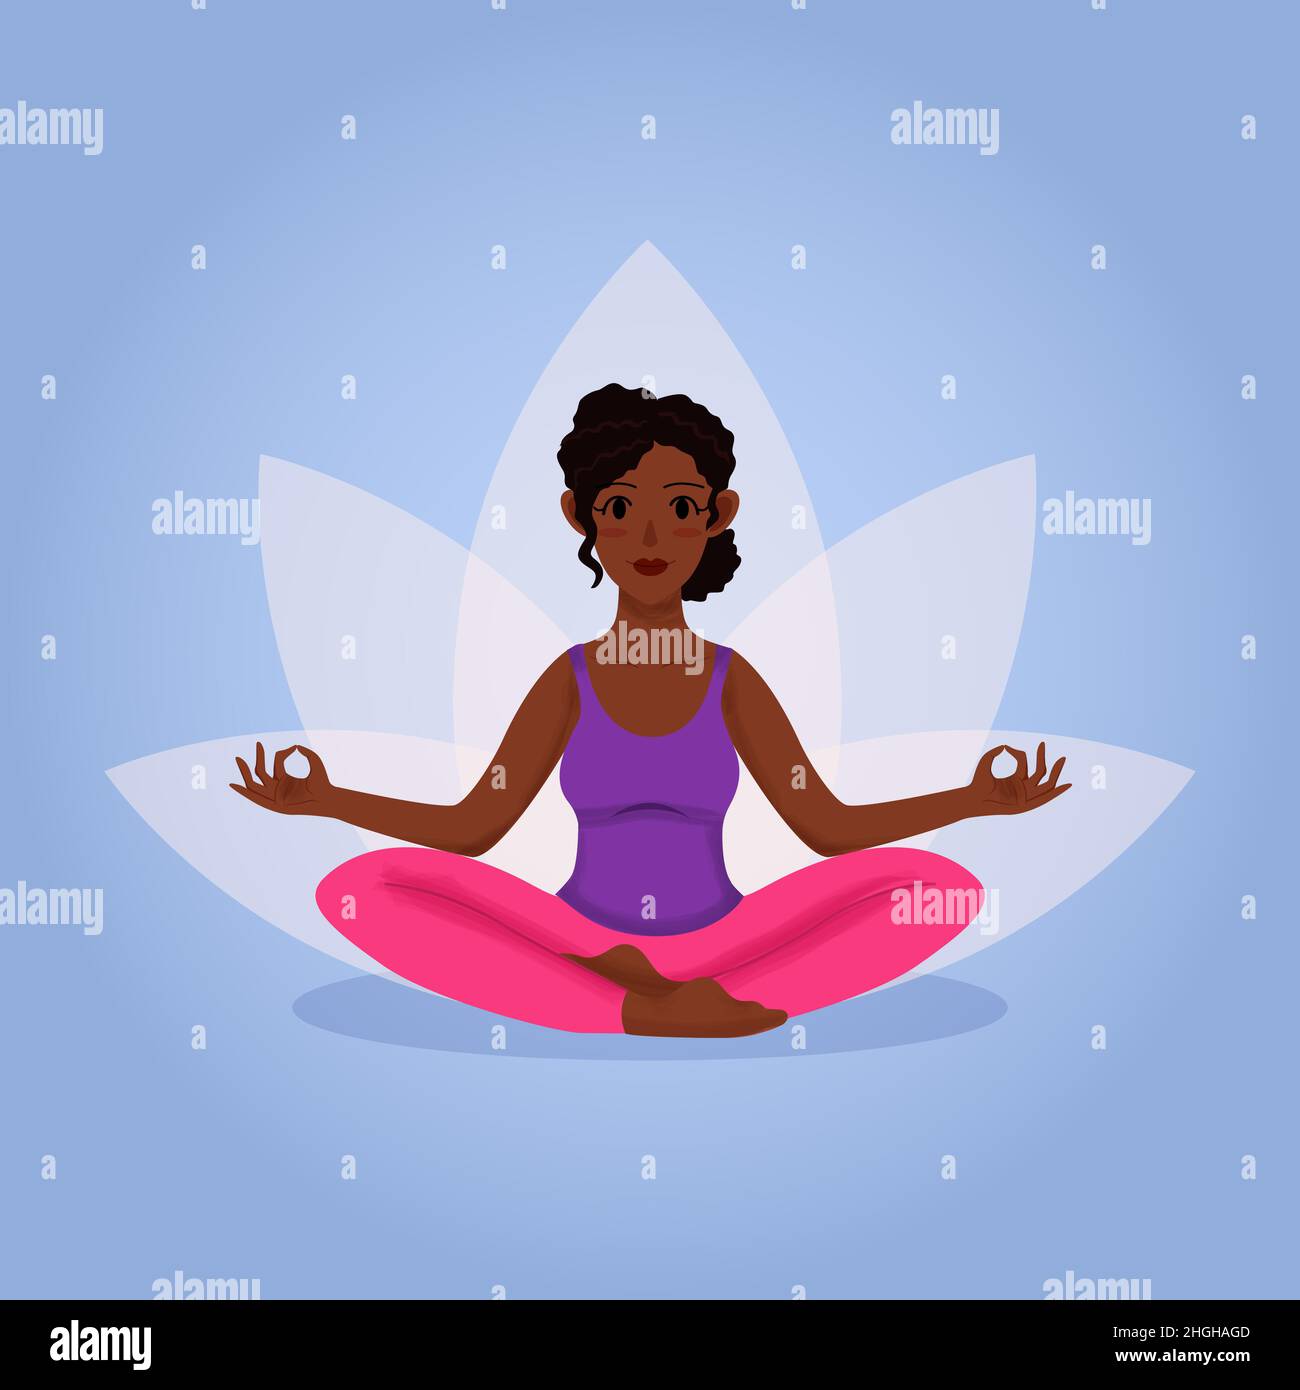 Jeune afro femme avec les cheveux bouclés pratiquer le yoga pose assise sur le sol dans lotus pose sakhusana Illustration de Vecteur